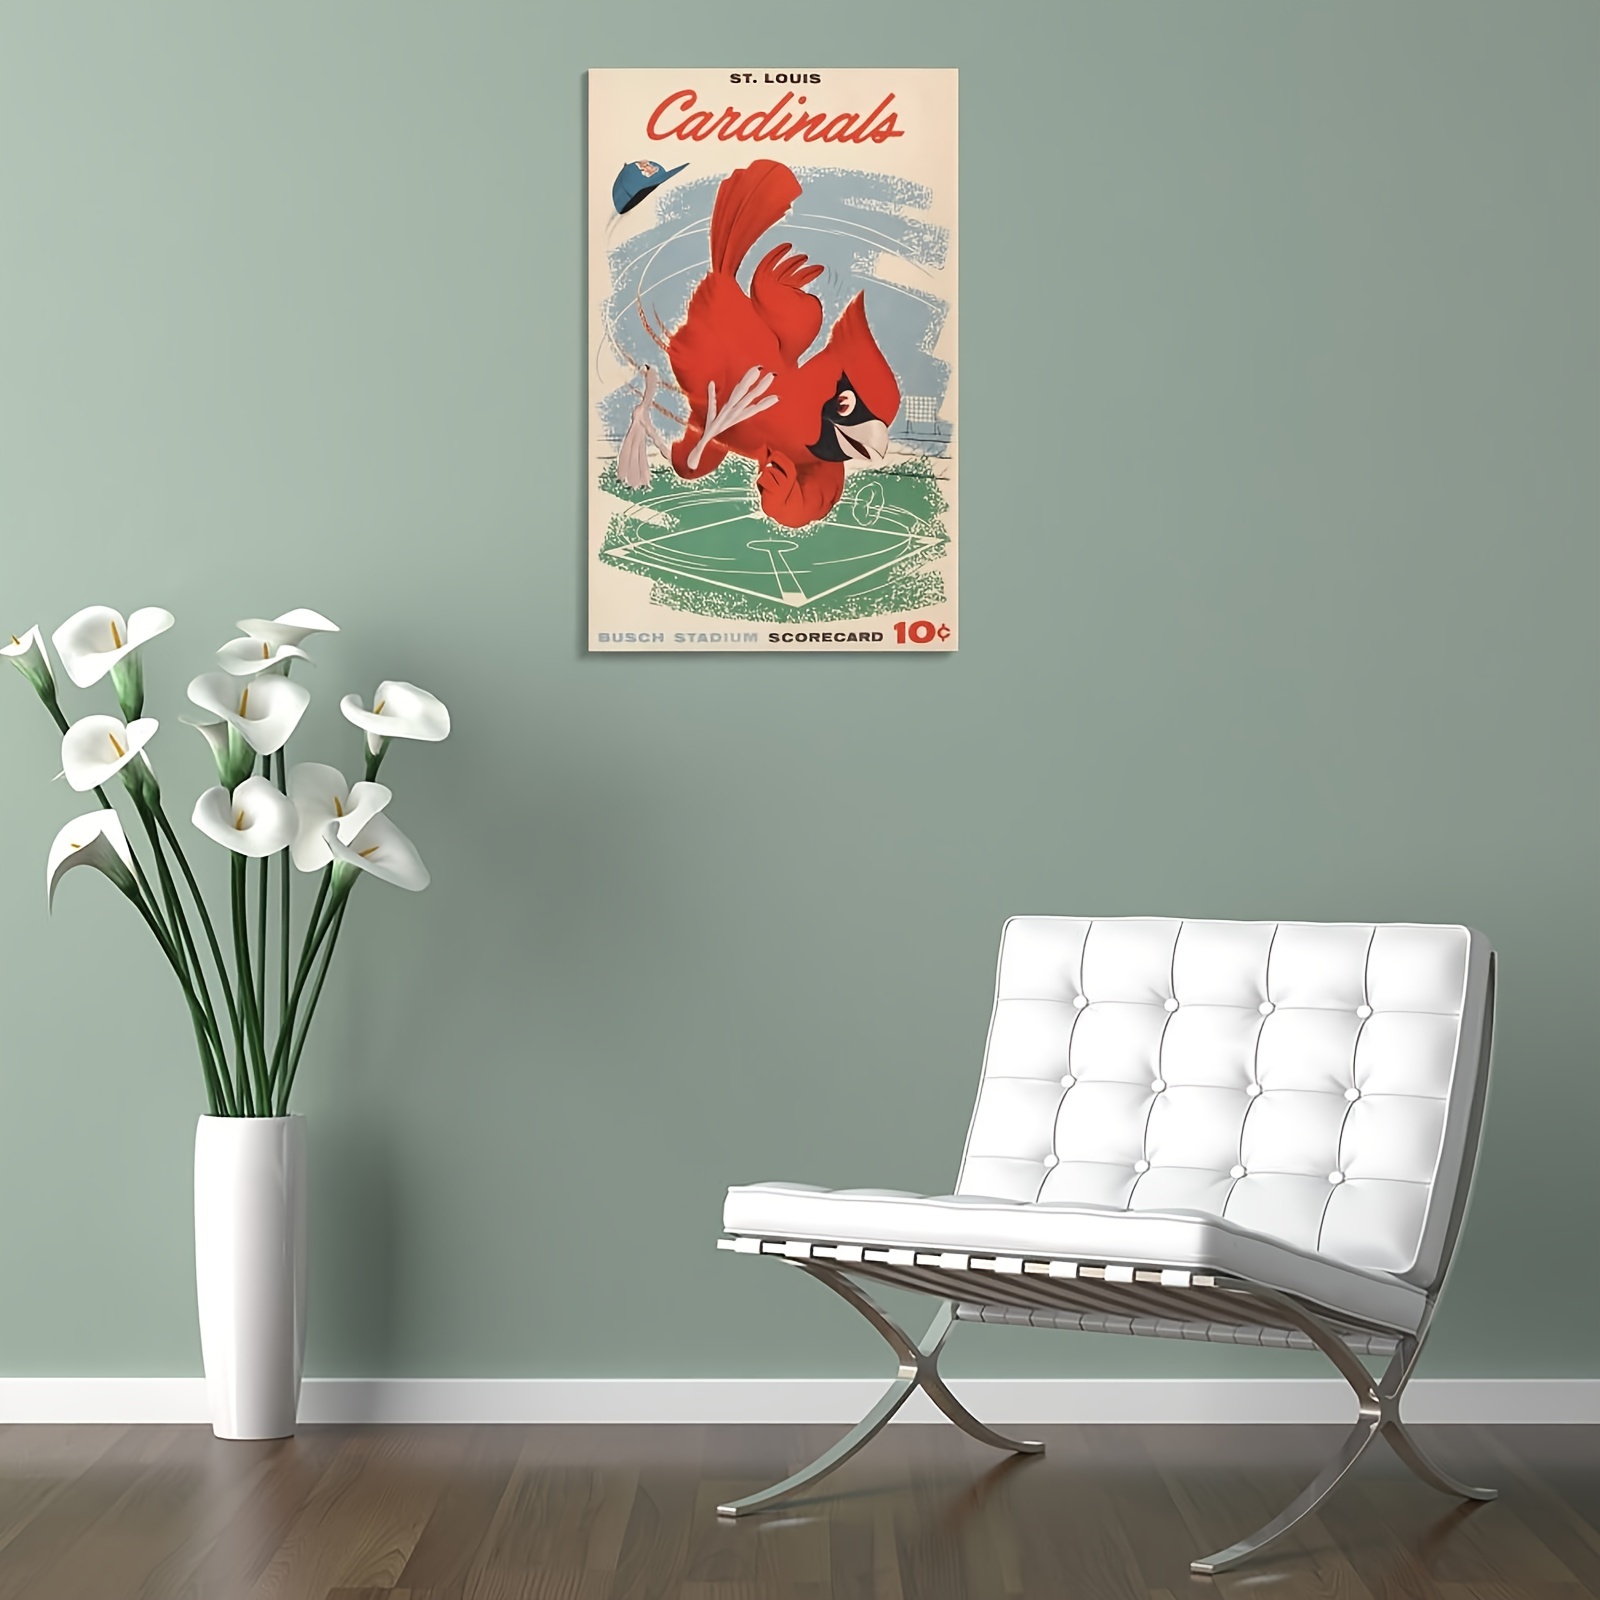 St. Louis Cardinals Vintage 1958 Scorecard Poster